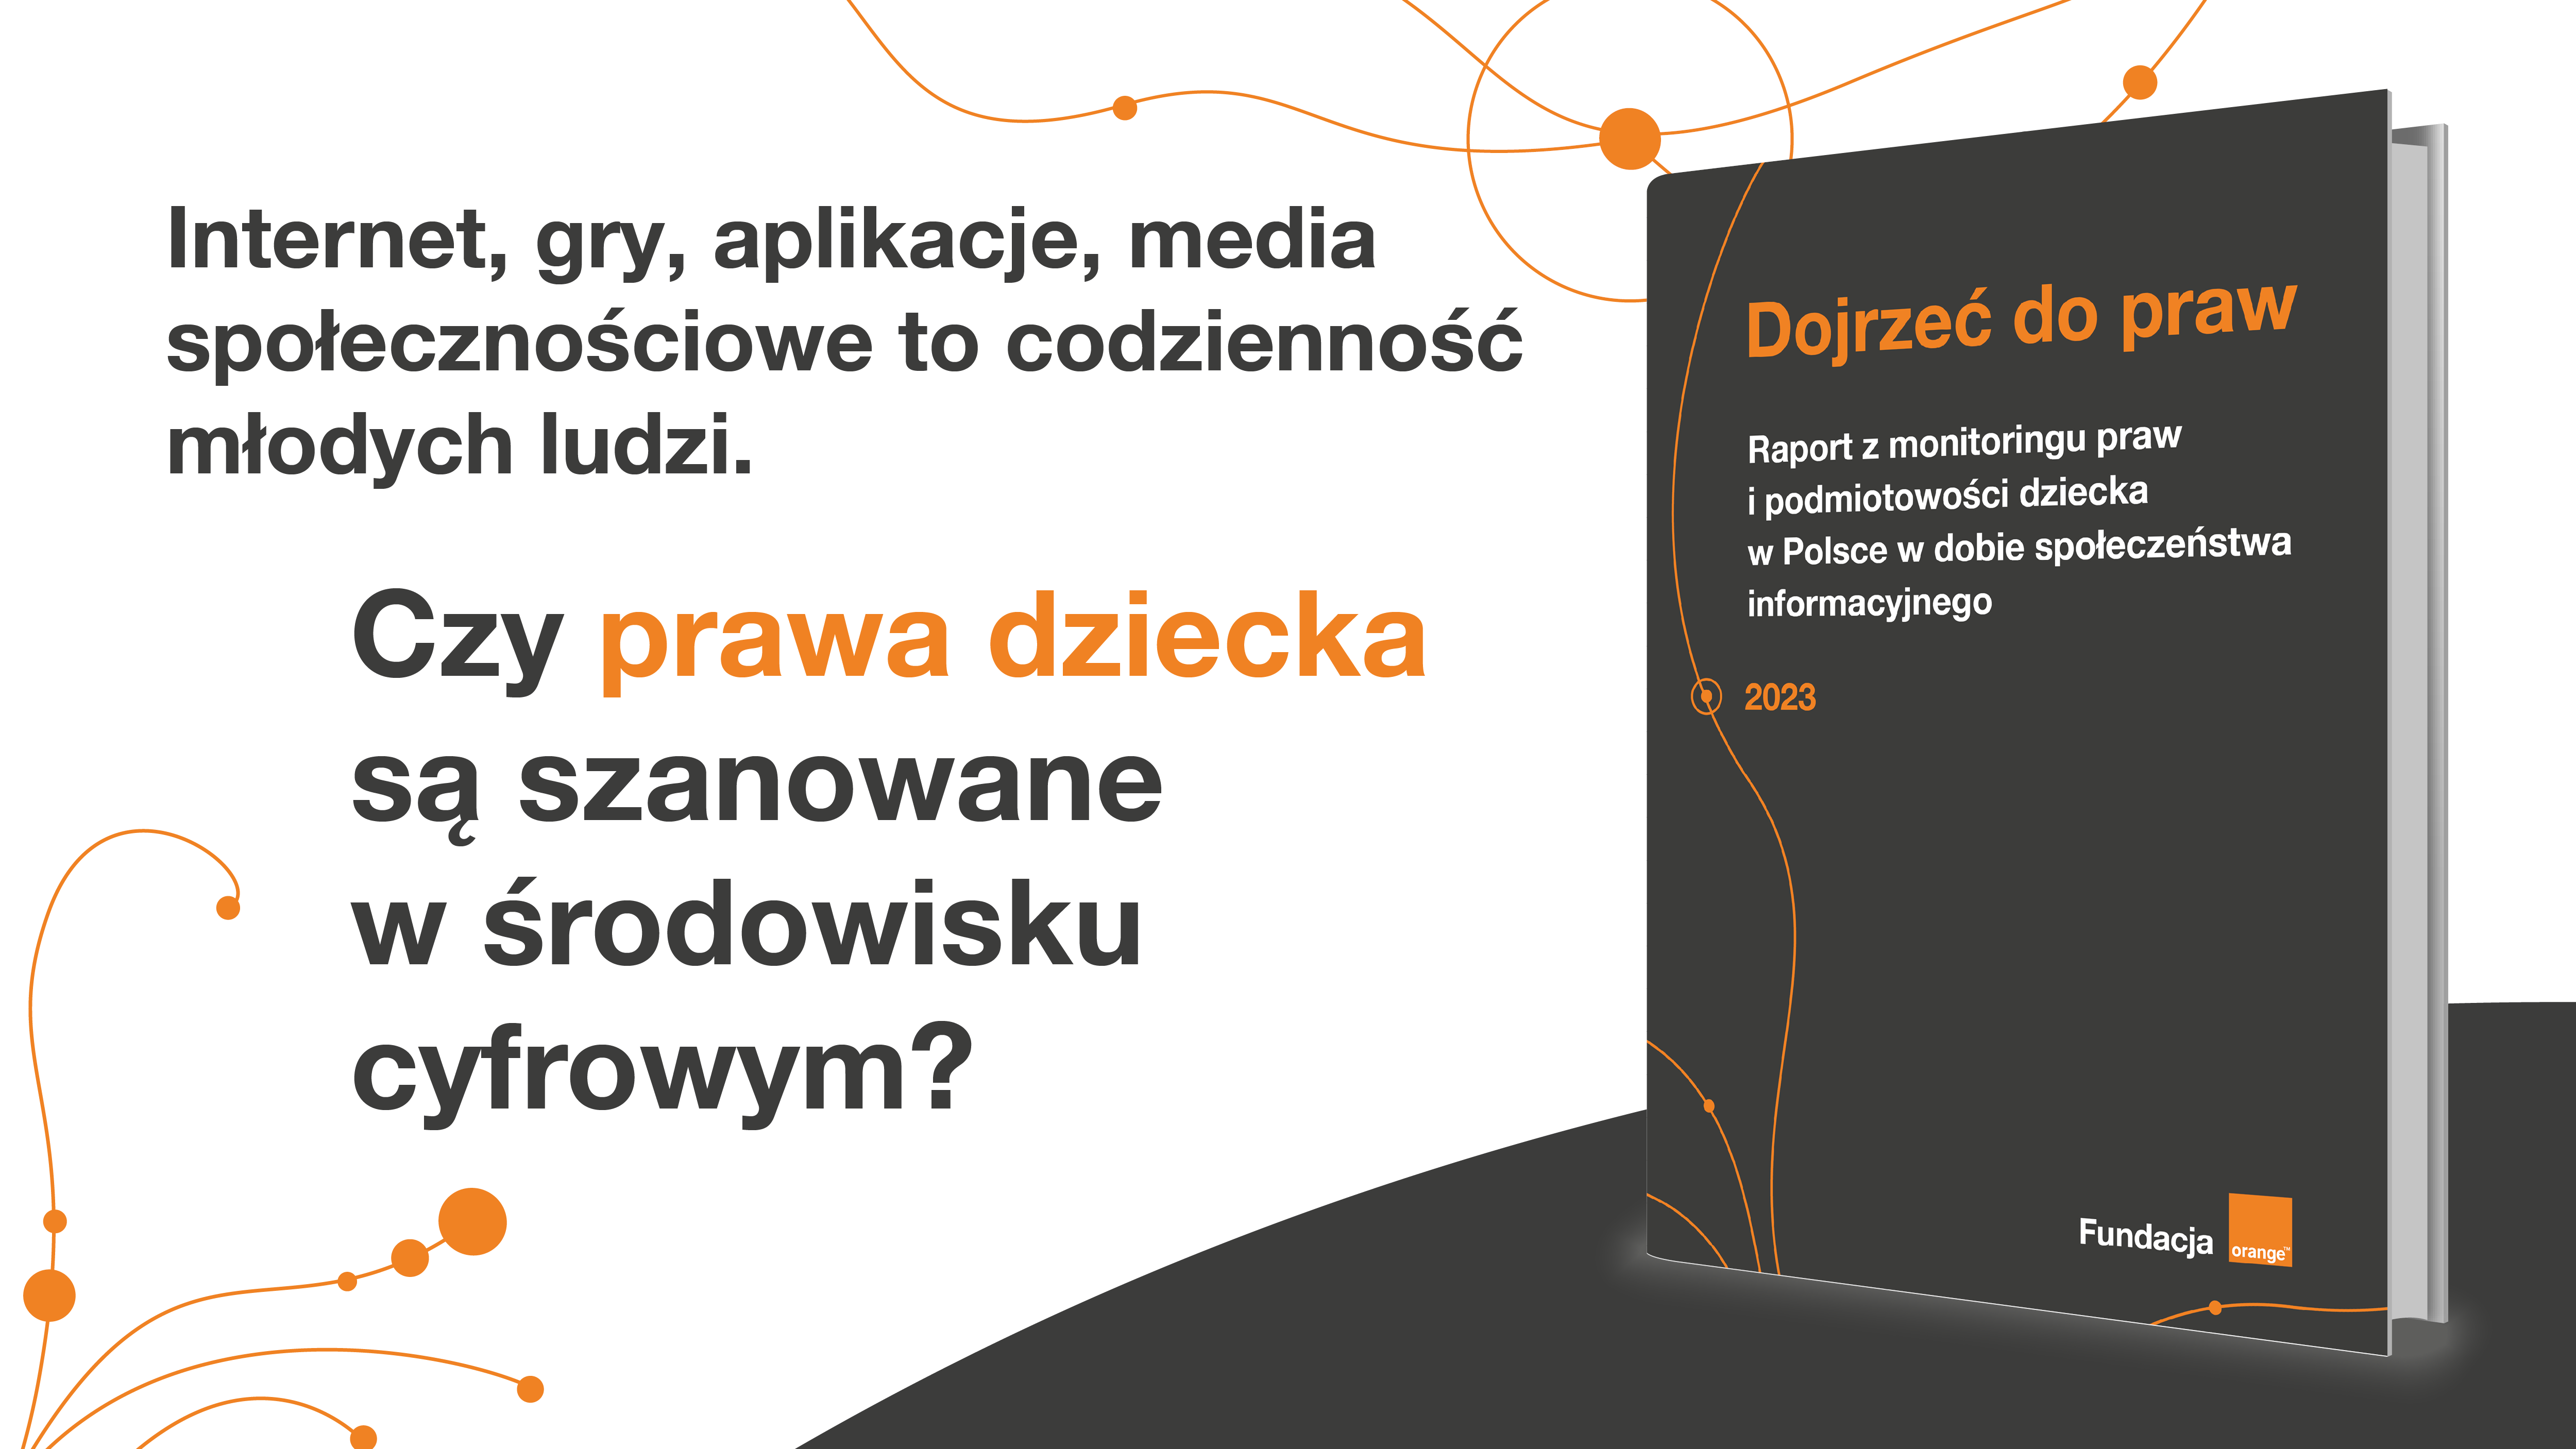 Raport-Dojrzec-do-praw_CZY-PRAWA-SA-SZANOWANE_1200x675.png